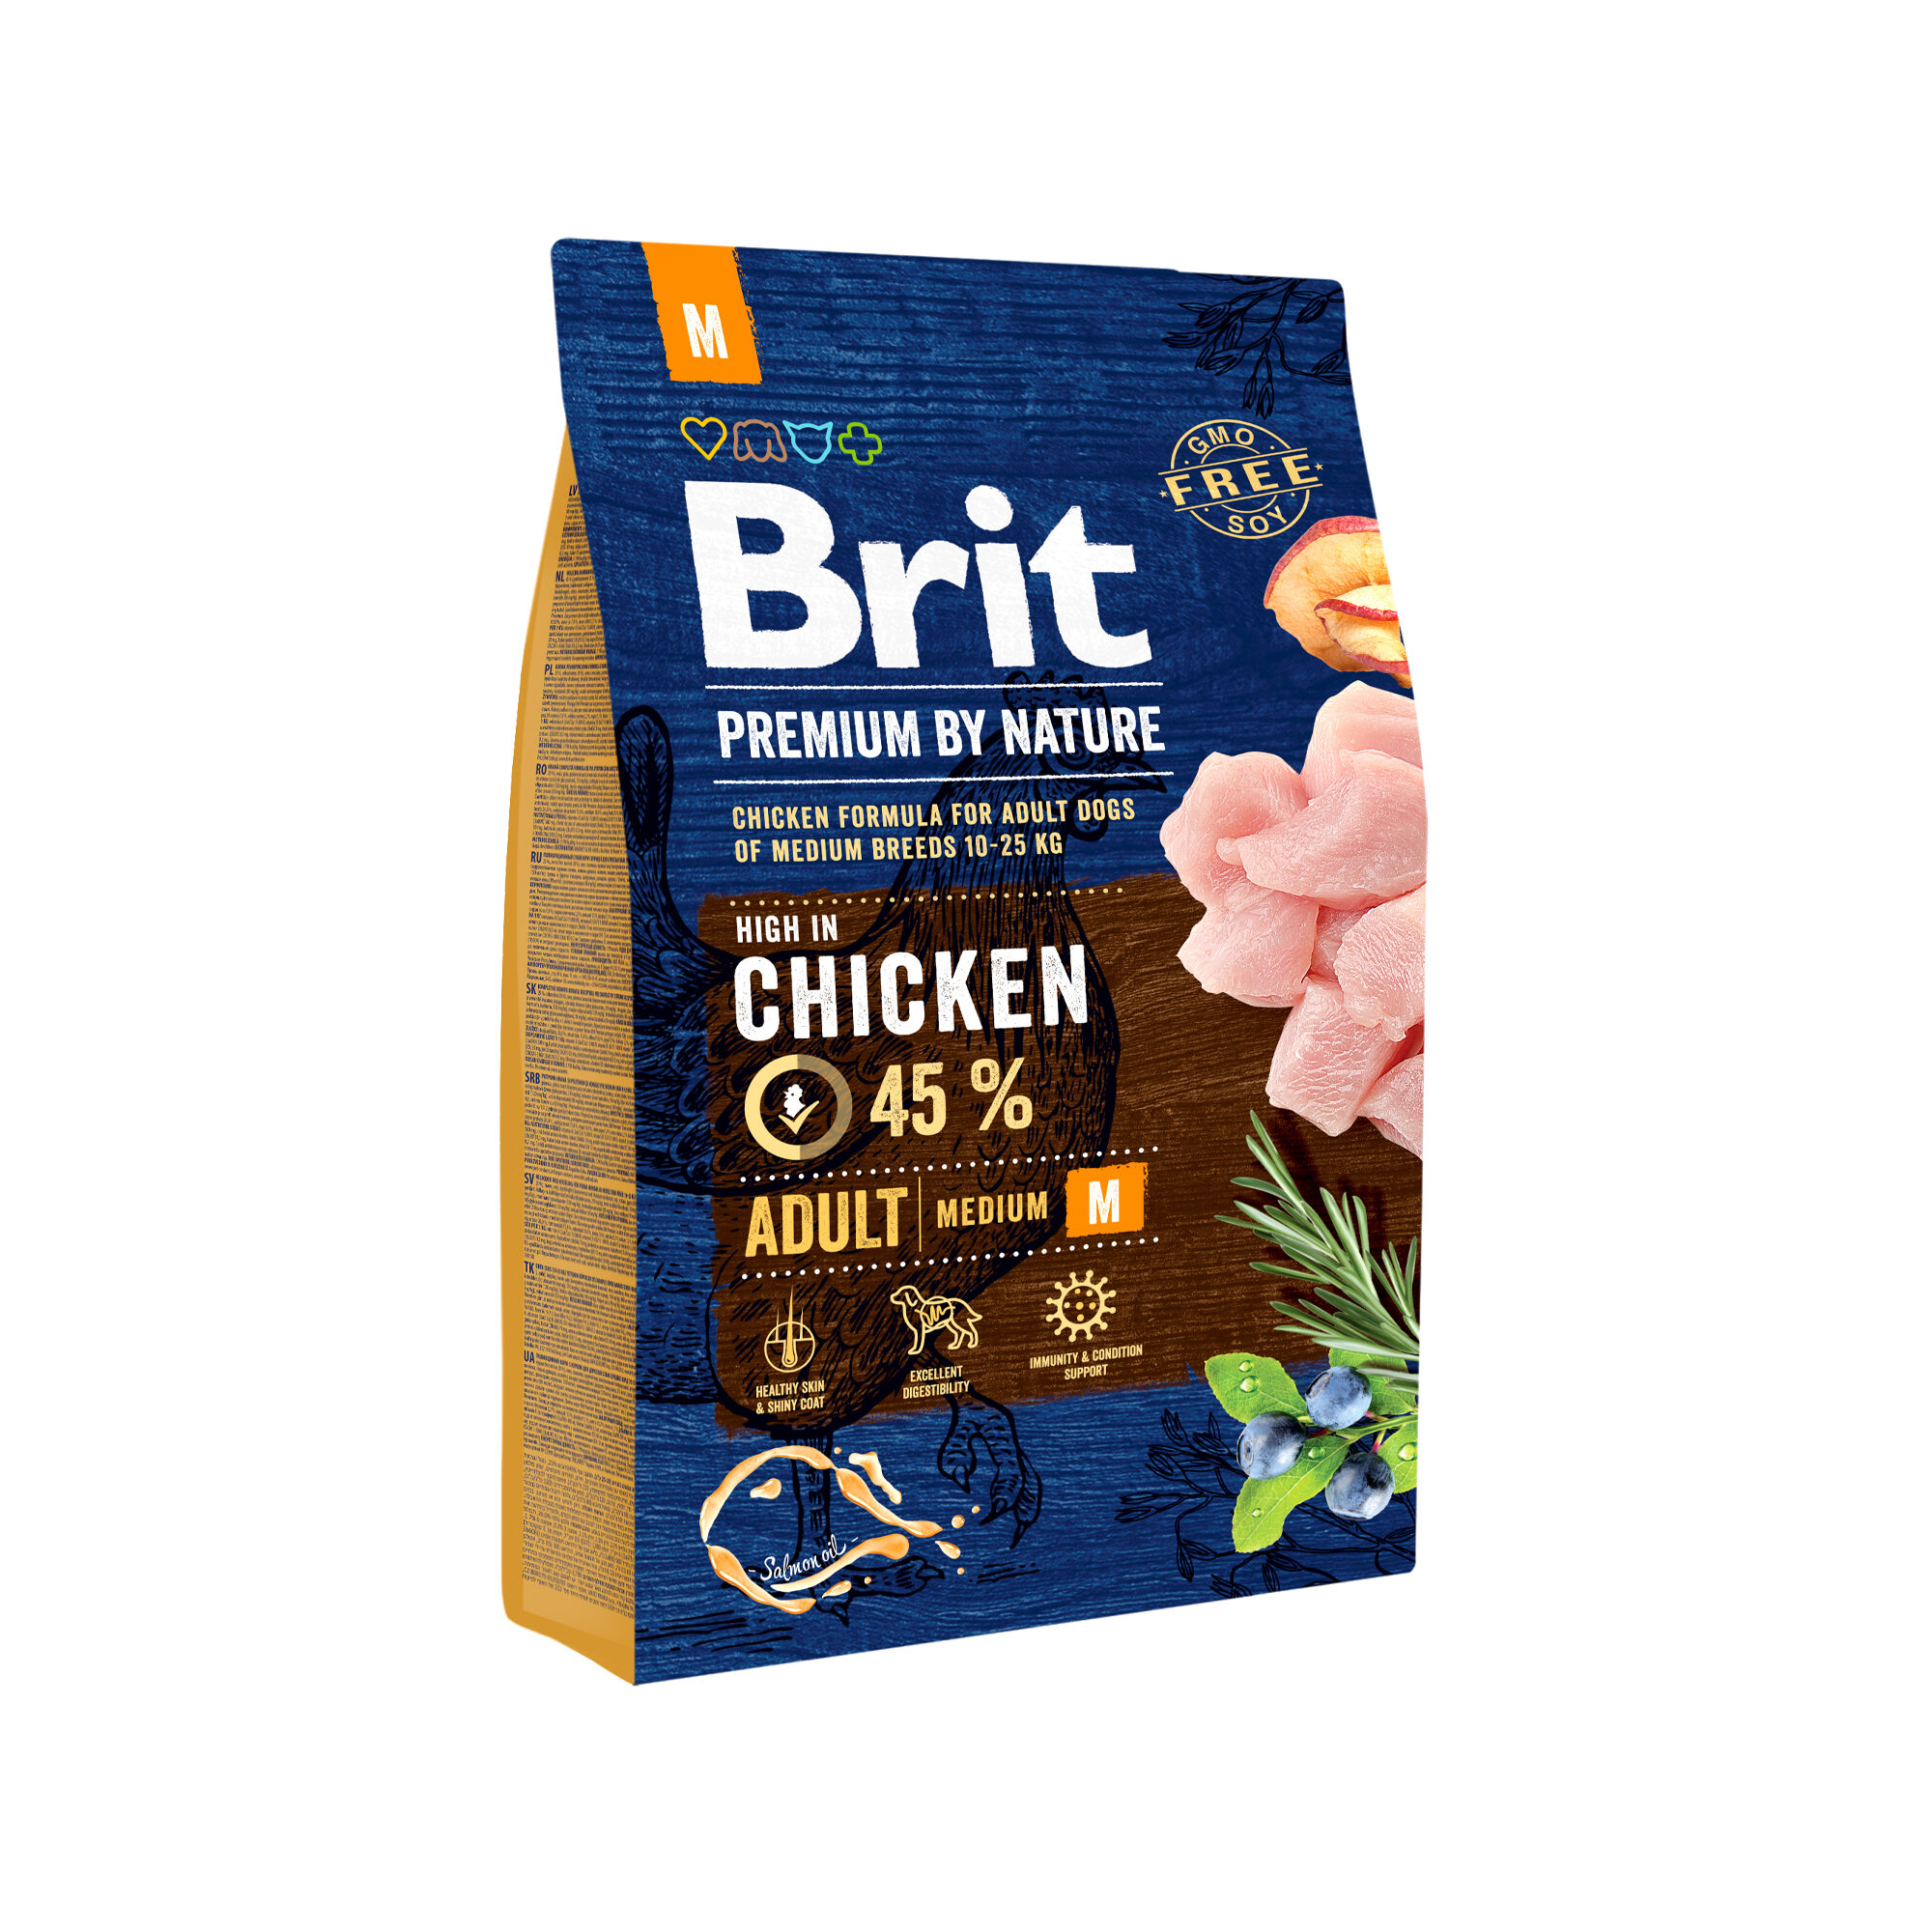 Brita - Brit Premium by Nature adulte m – Trockenfutter für Hunde – 3 kg